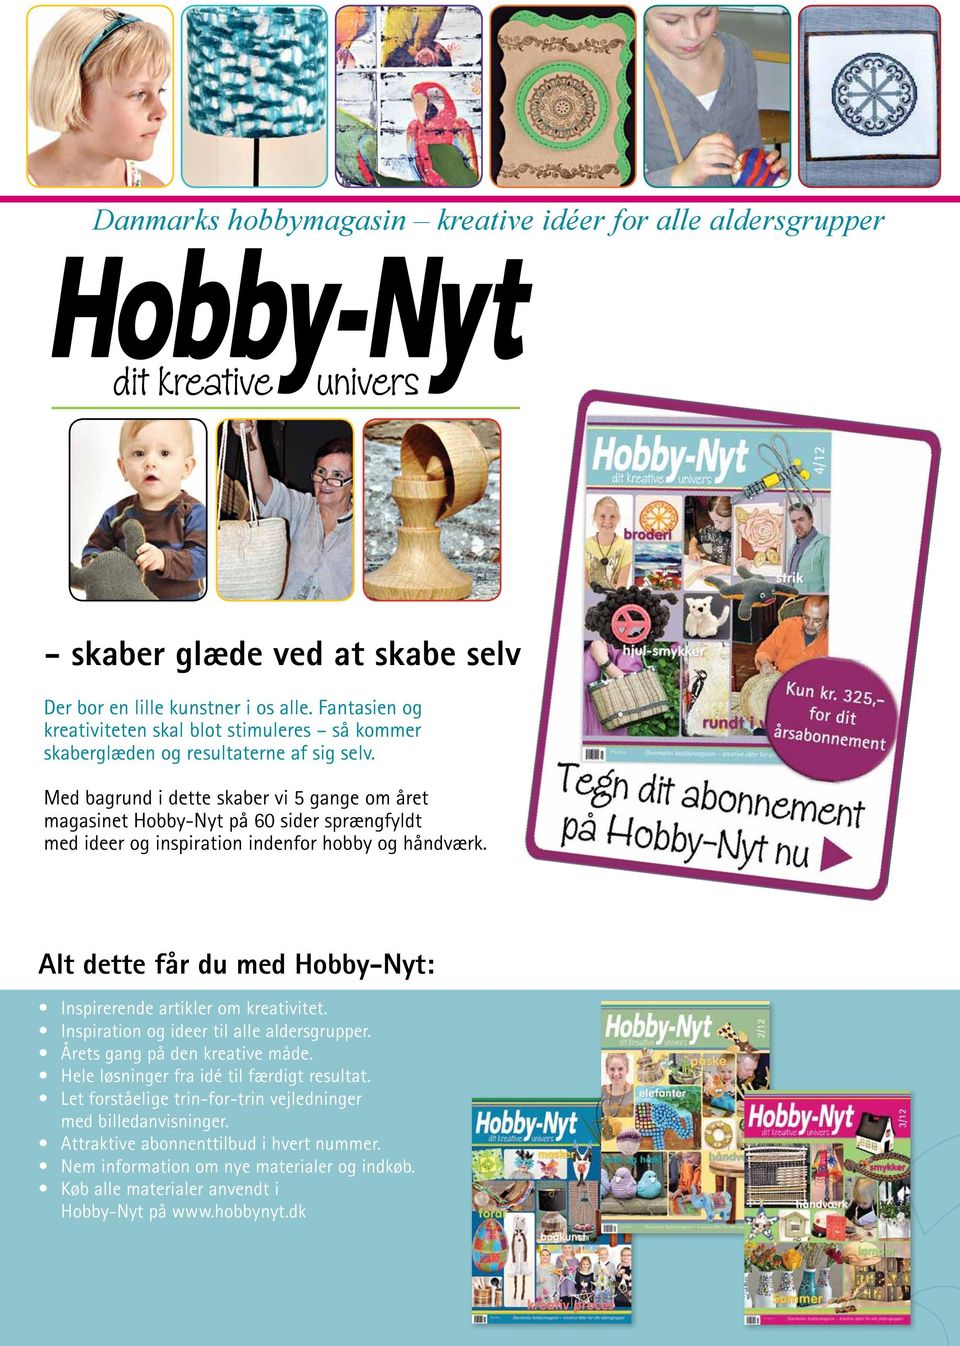 Med bagrund i dette skaber vi 5 gange om året magasinet Hobby-Nyt på 60 sider sprængfyldt med ideer og inspiration indenfor hobby og håndværk.